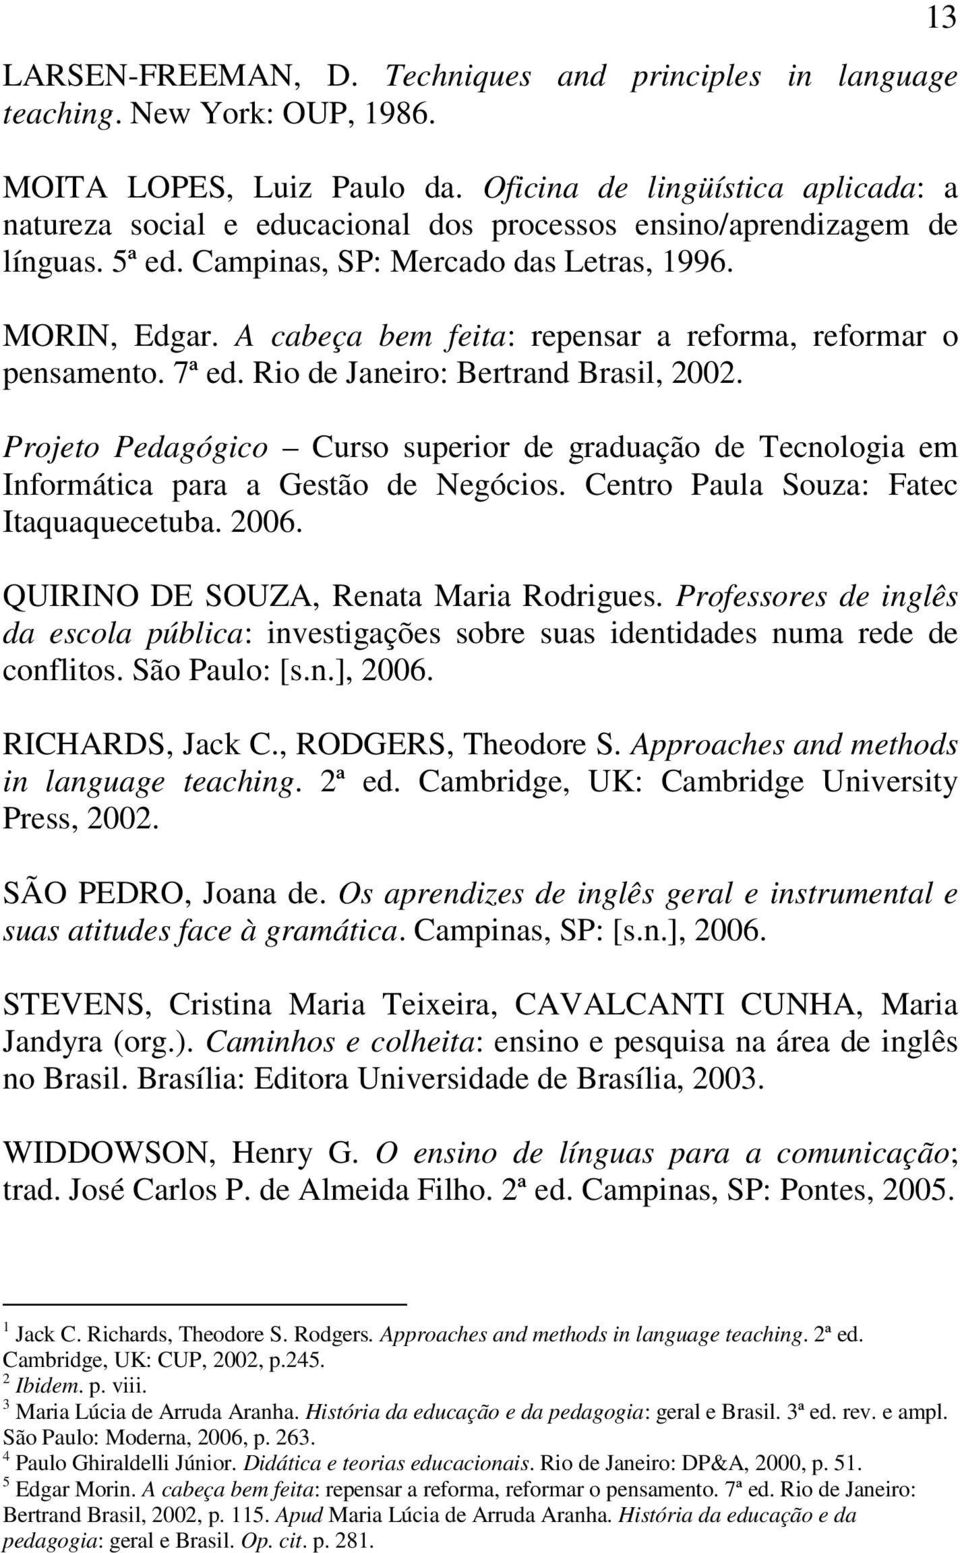 A cabeça bem feita: repensar a reforma, reformar o pensamento. 7ª ed. Rio de Janeiro: Bertrand Brasil, 2002.